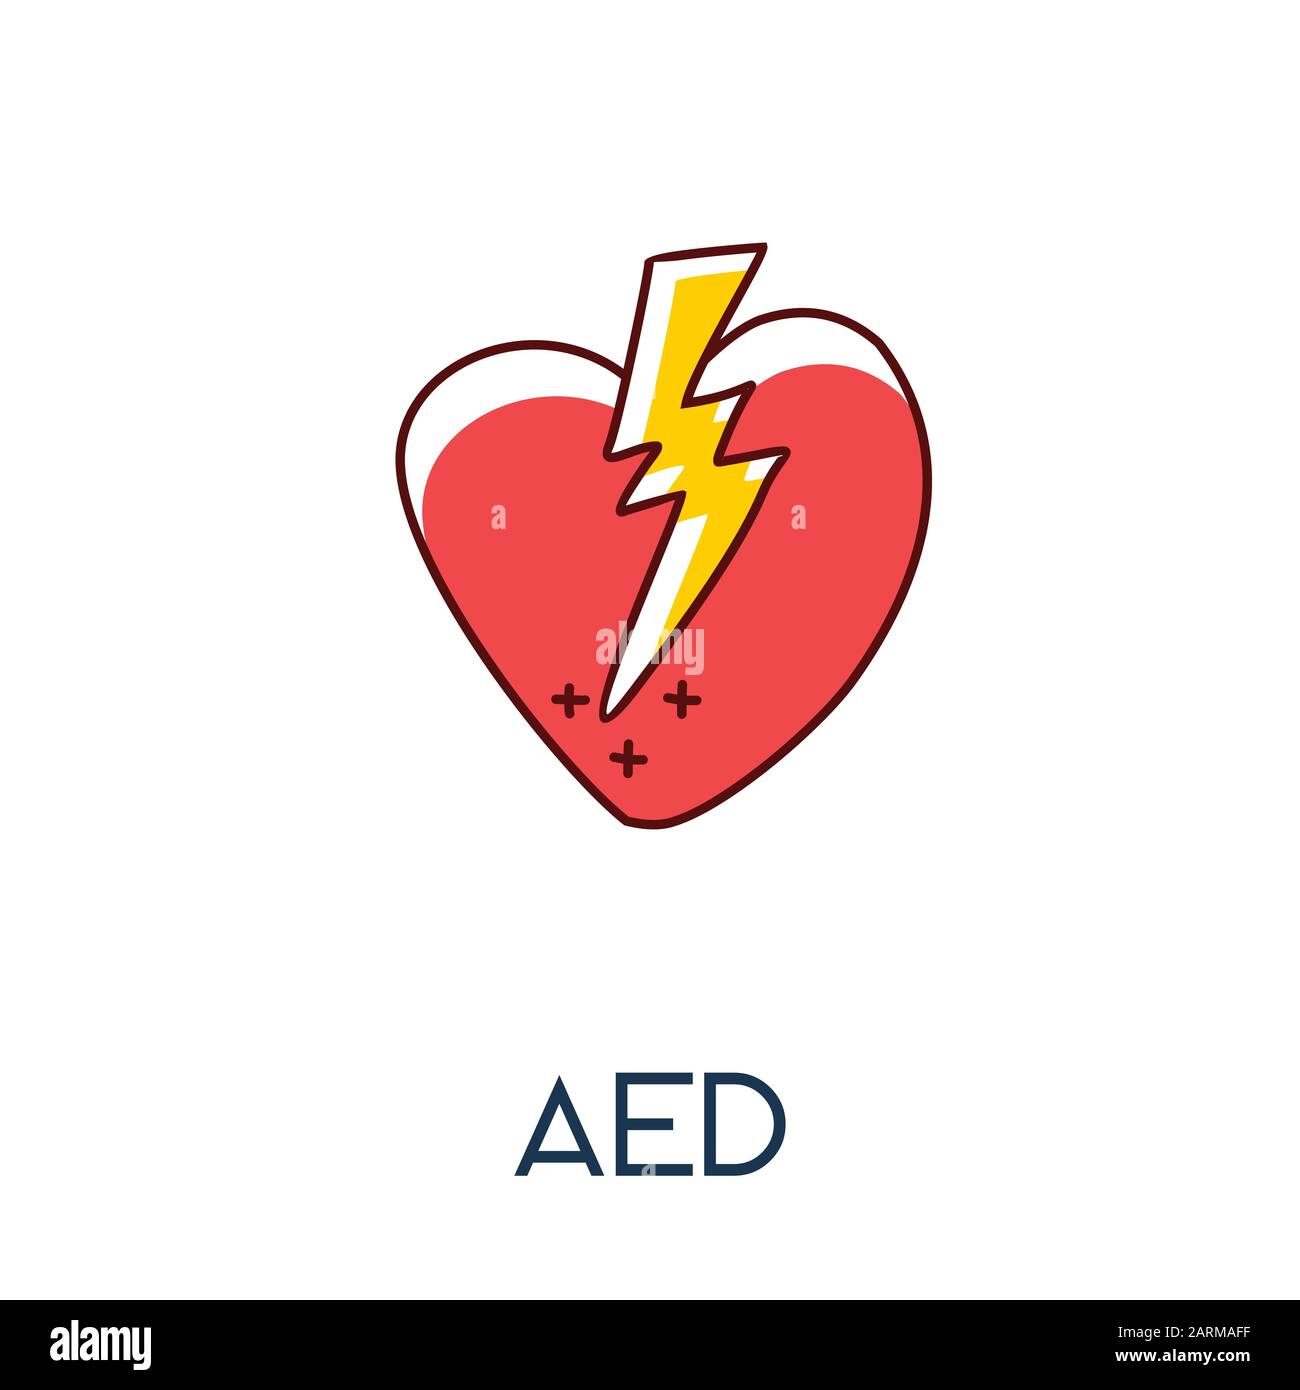 Automatisierter externer Defibrillator (AED) Herz mit minimalistischem Elektroschock-Symbol in minimalistischer Darstellung mit von Hand gezeichneter Medizine Stock Vektor